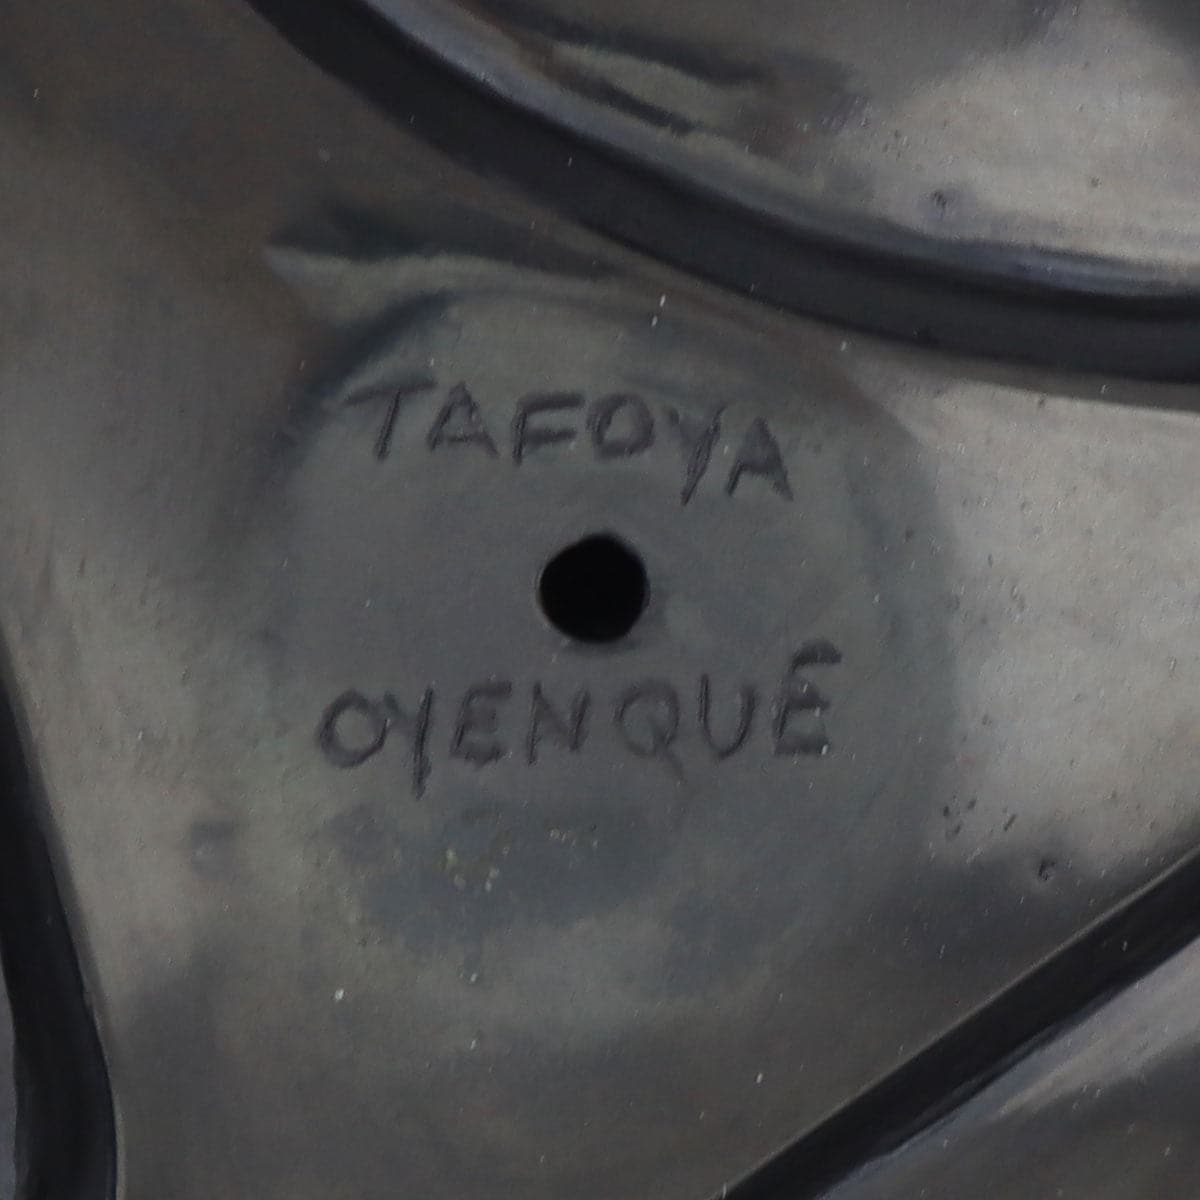 Linda Tafoya (b. 1962) - Santa Clara Black Carved Swirl Jar c. 1980-90s, 2" x 2" (P91369B-1121-057)6